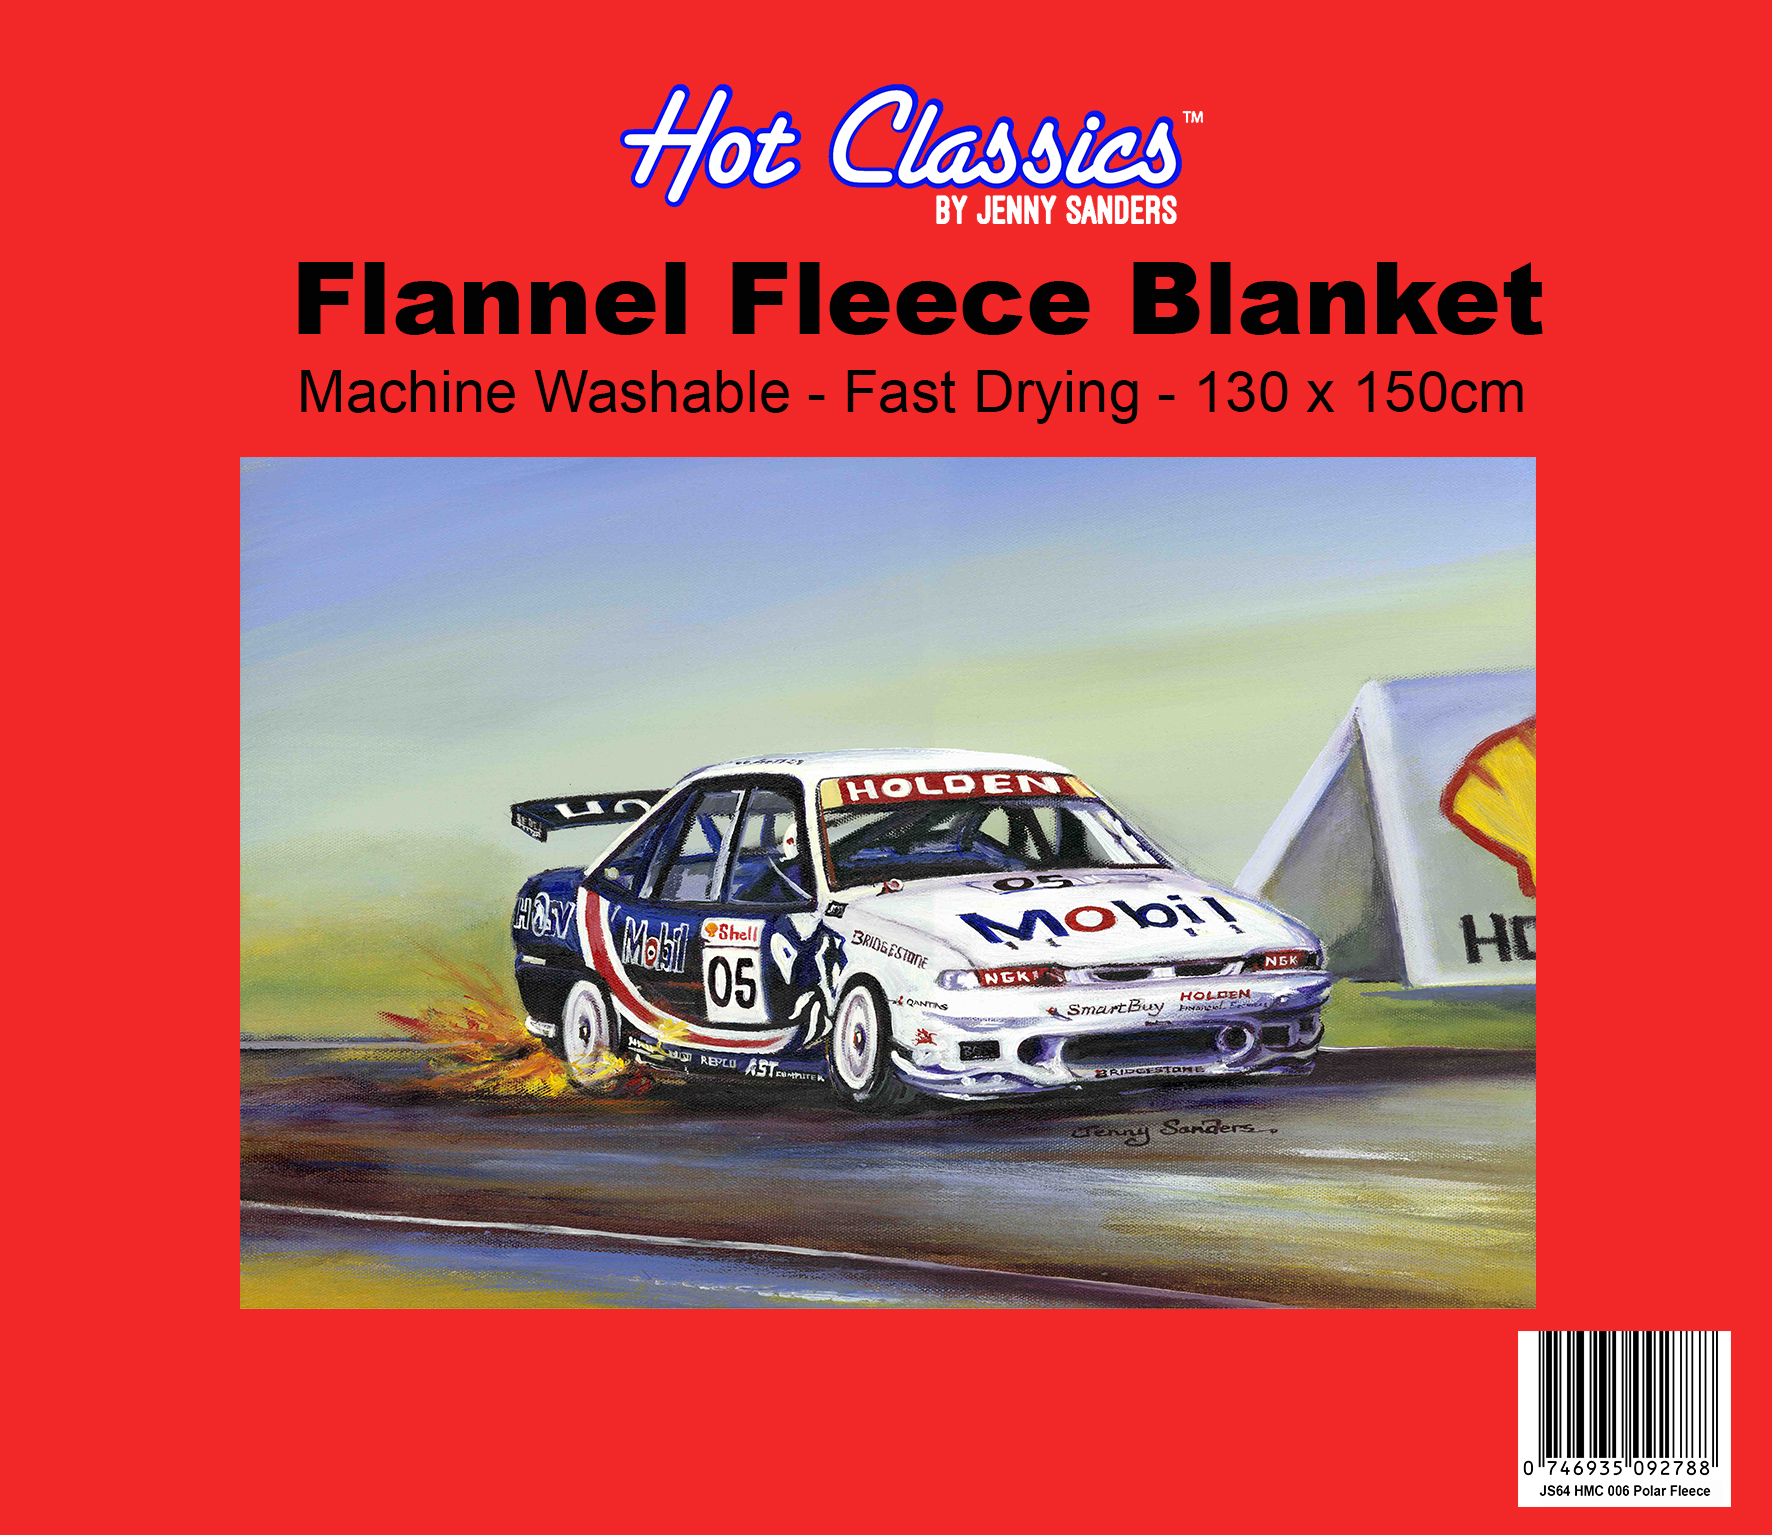 Brocky Holden 05 Flannel Fleece Blanket Art by Jenny Sanders